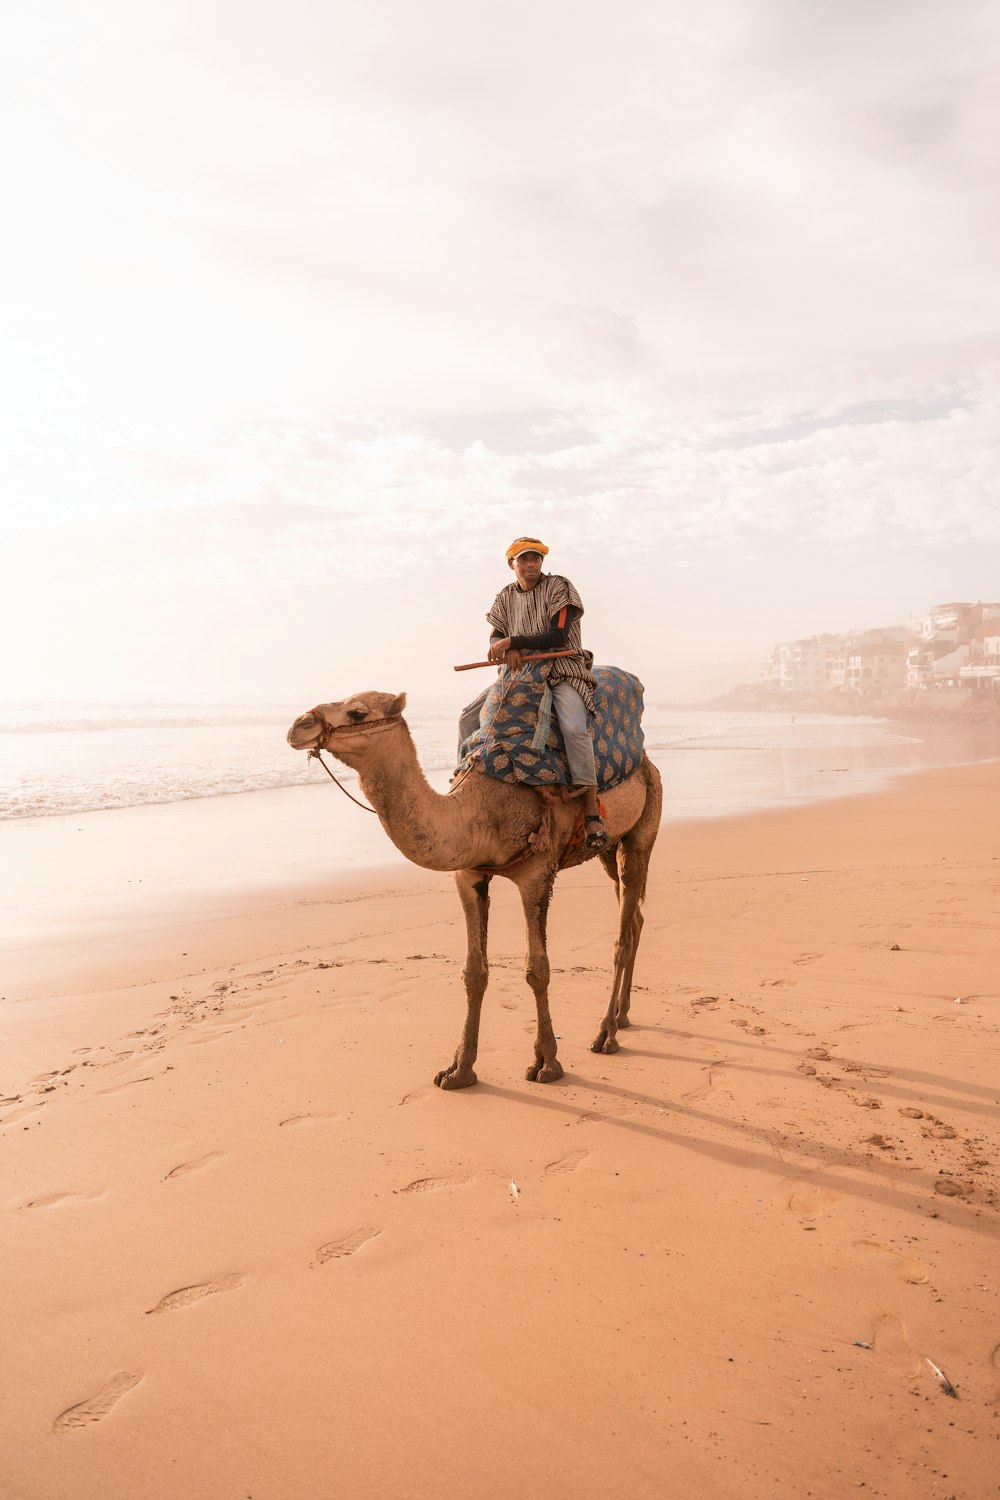 a person riding a camel on a beach